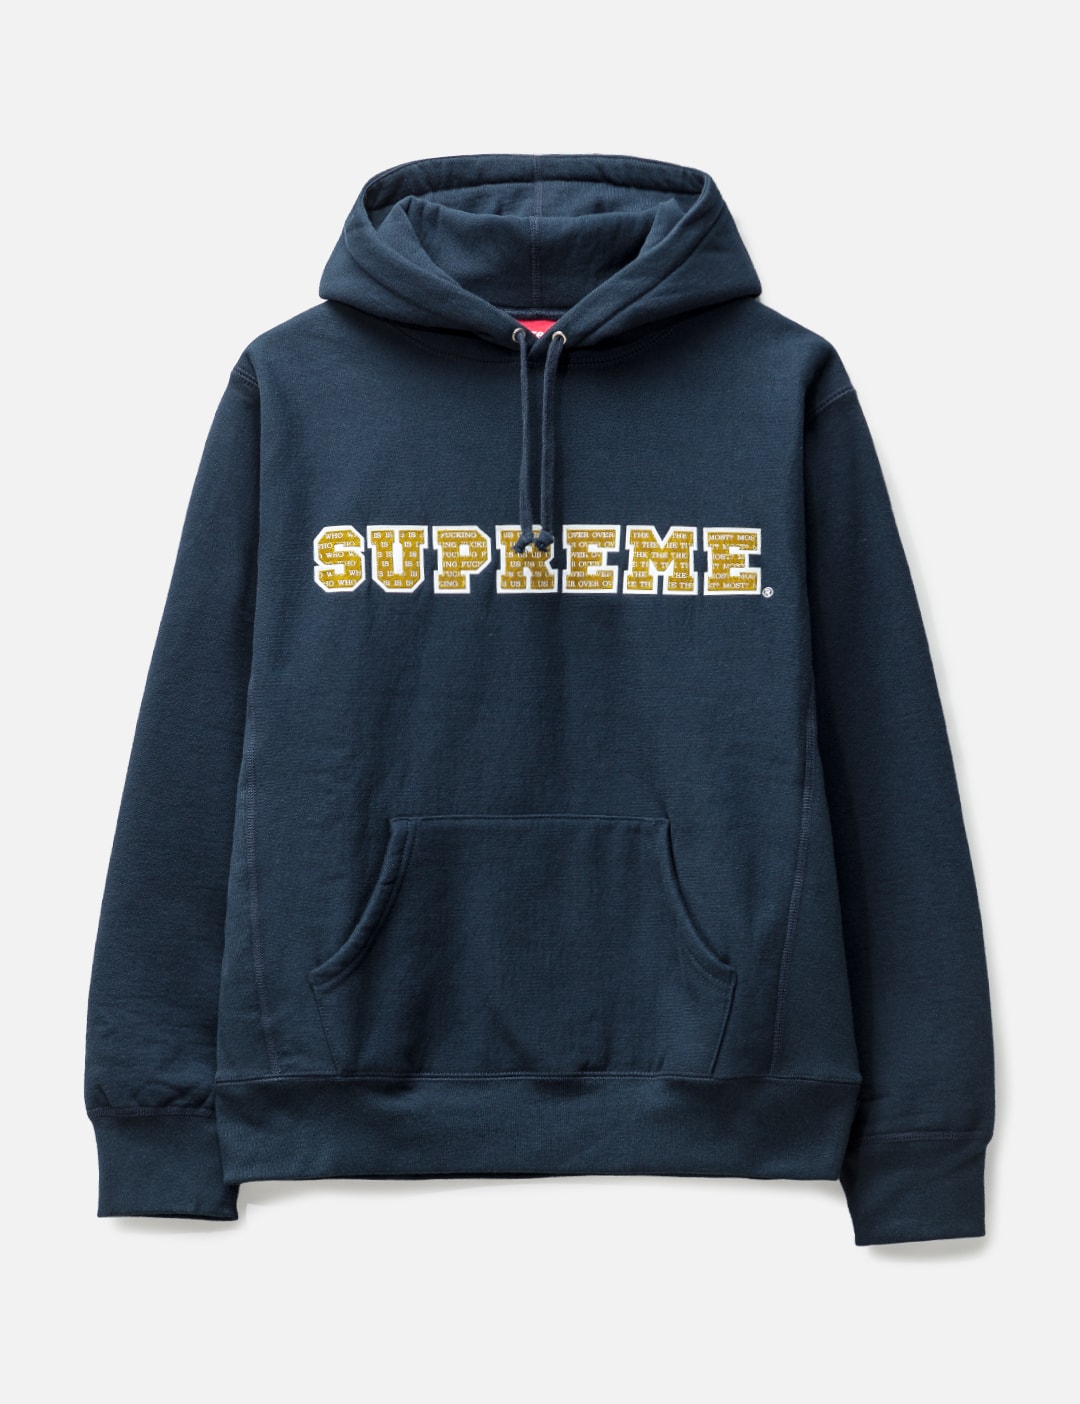 Supreme Philippines - Supreme Hoodie, T Shirt Sale - Supreme Store